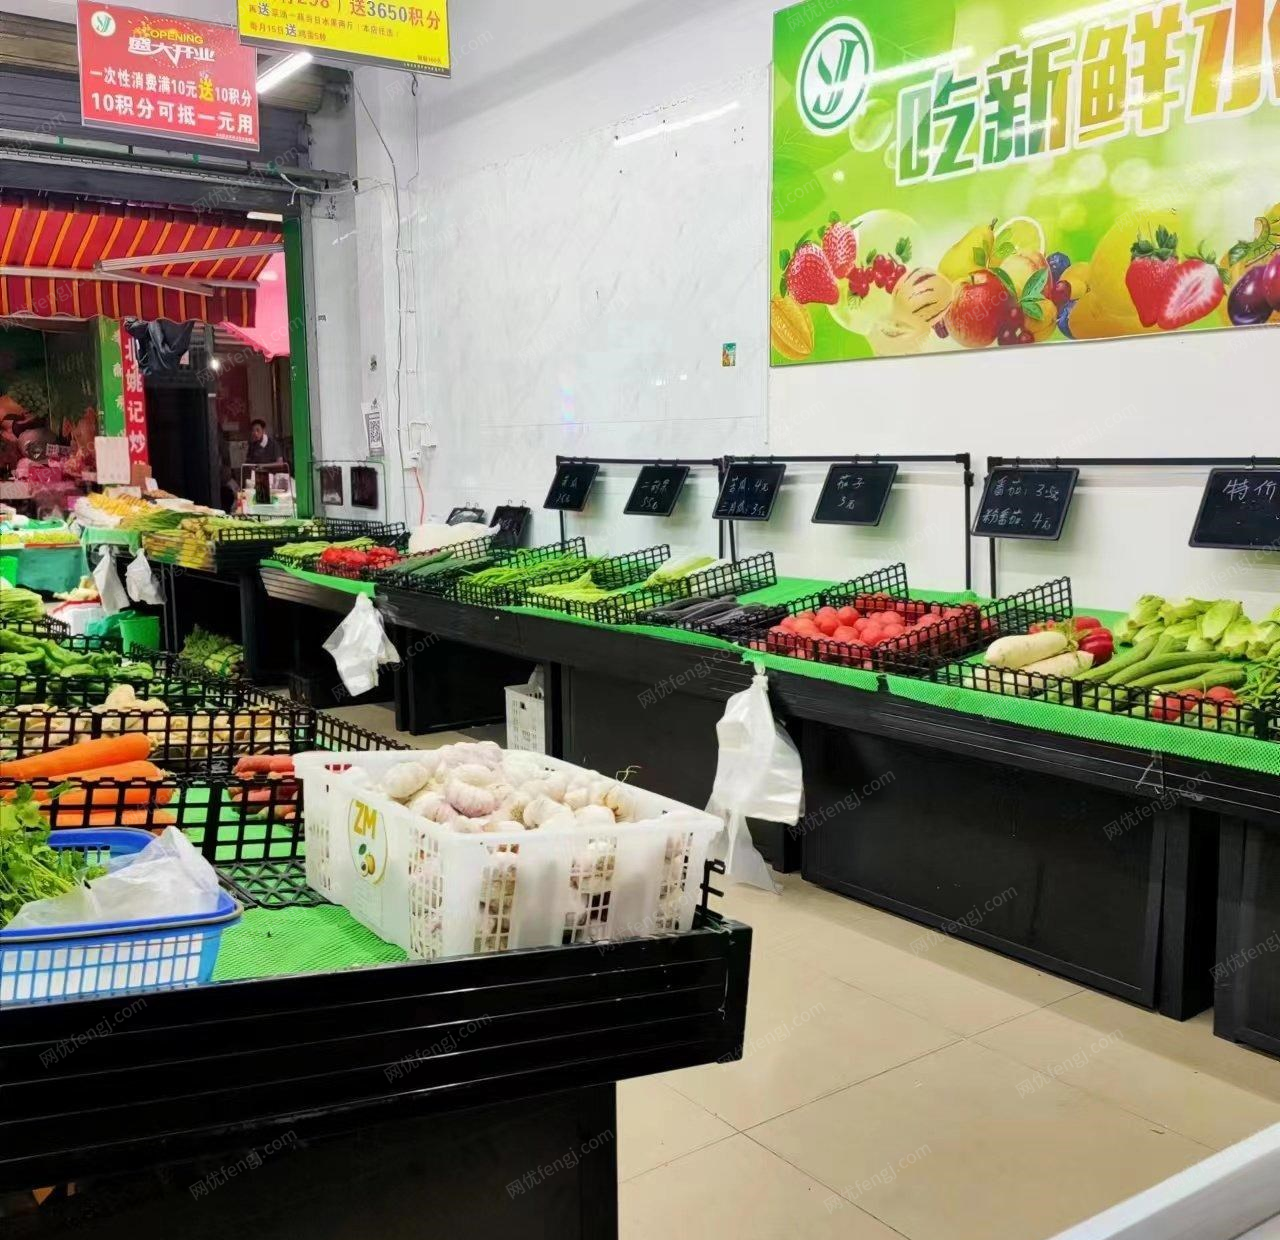 四川成都生鲜超市货架9成新优惠出售